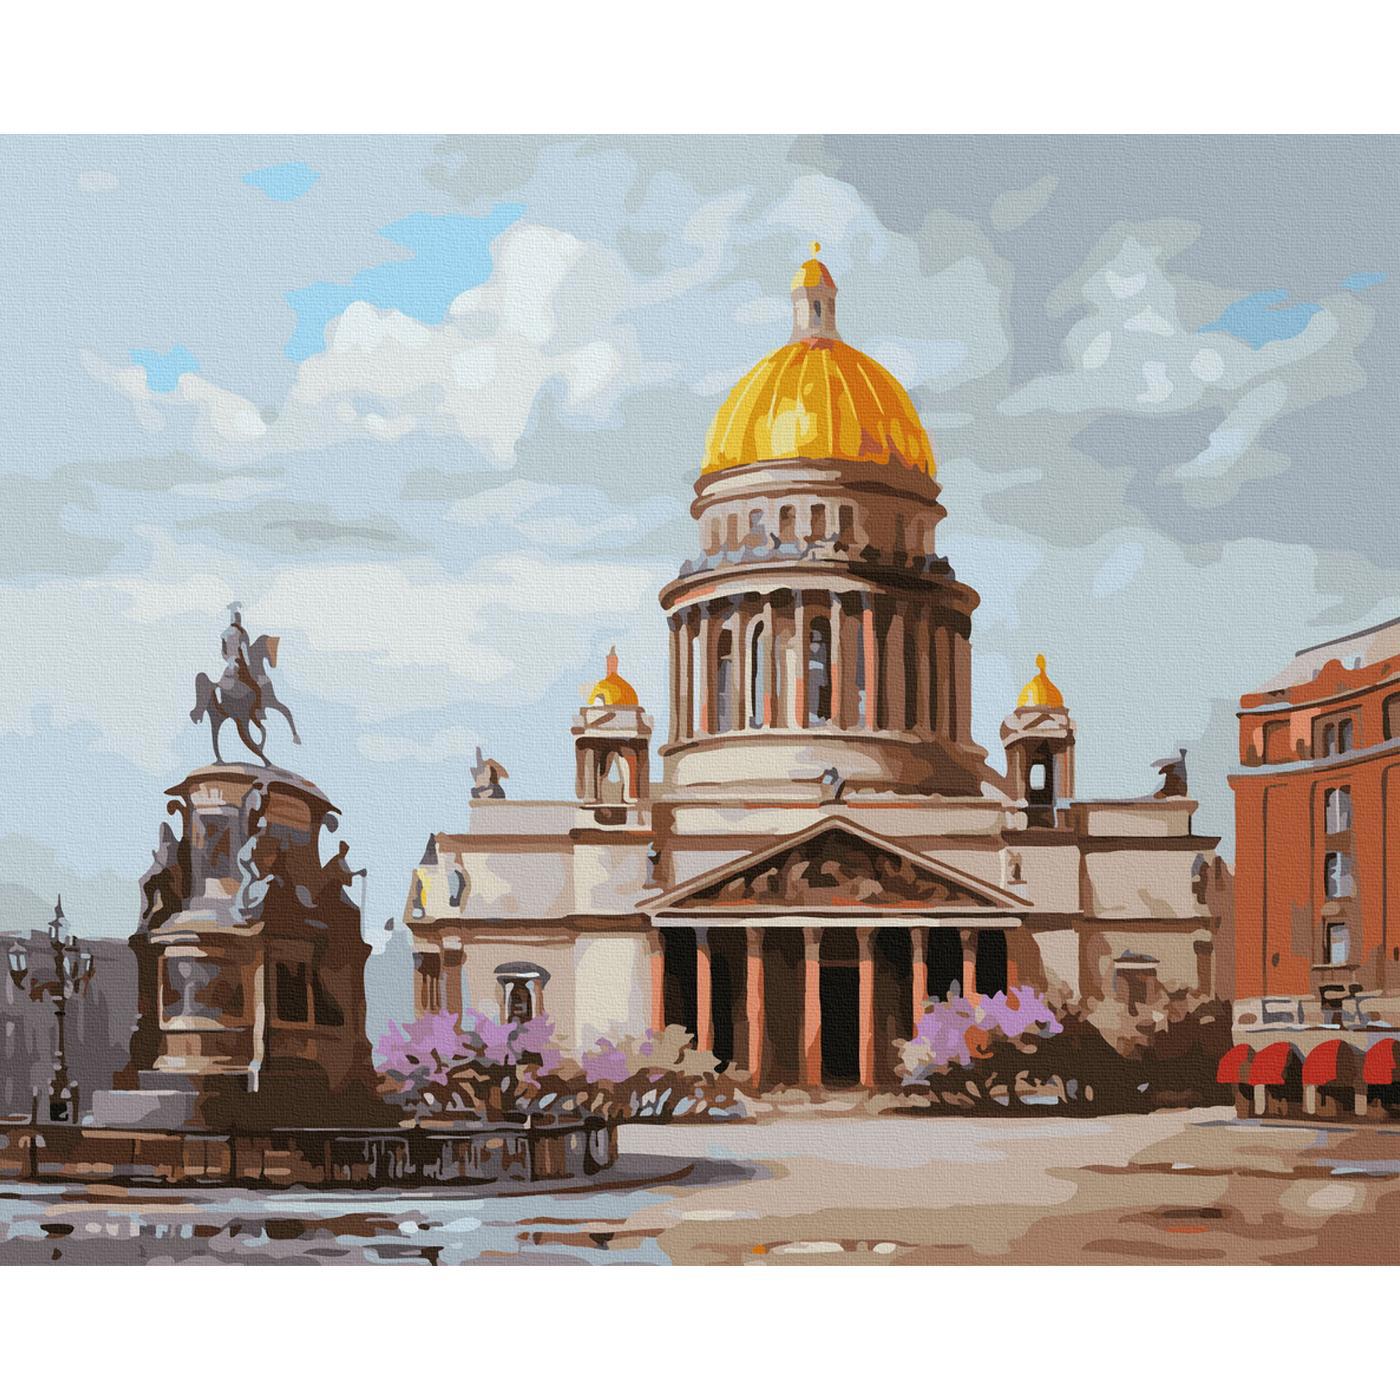 90305057 Картина по номерам 40х50 см цветов холст Санкт-петербург. Исаакиевская площадь (33 цвета) STLM-0176447 MOLLY